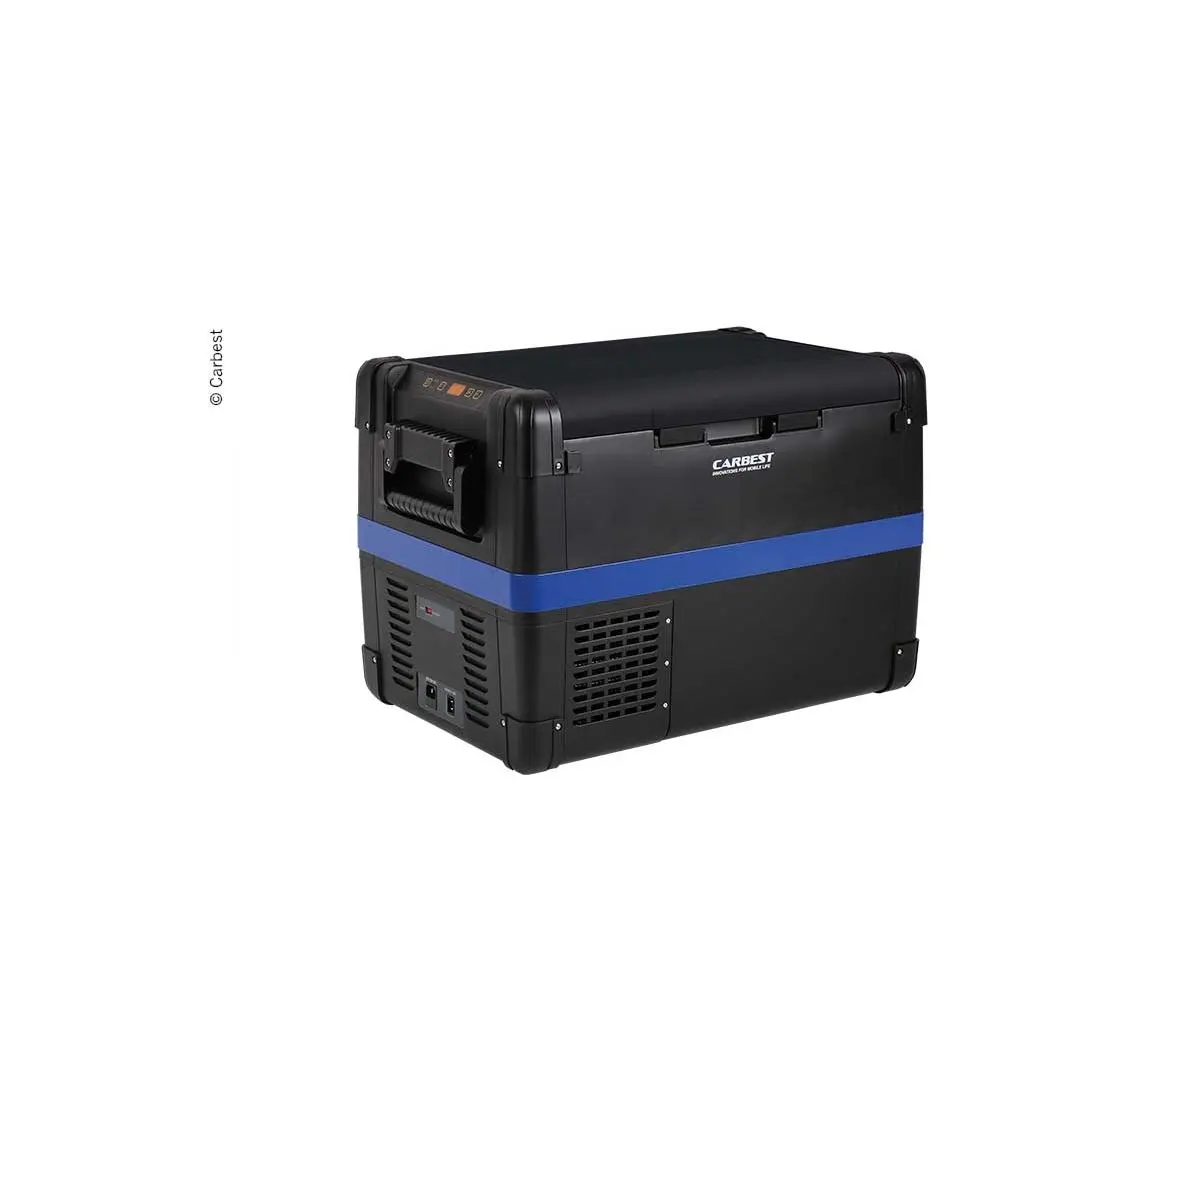 Kompresorový chladiaci box Carbest MaxiFreezer 50 l